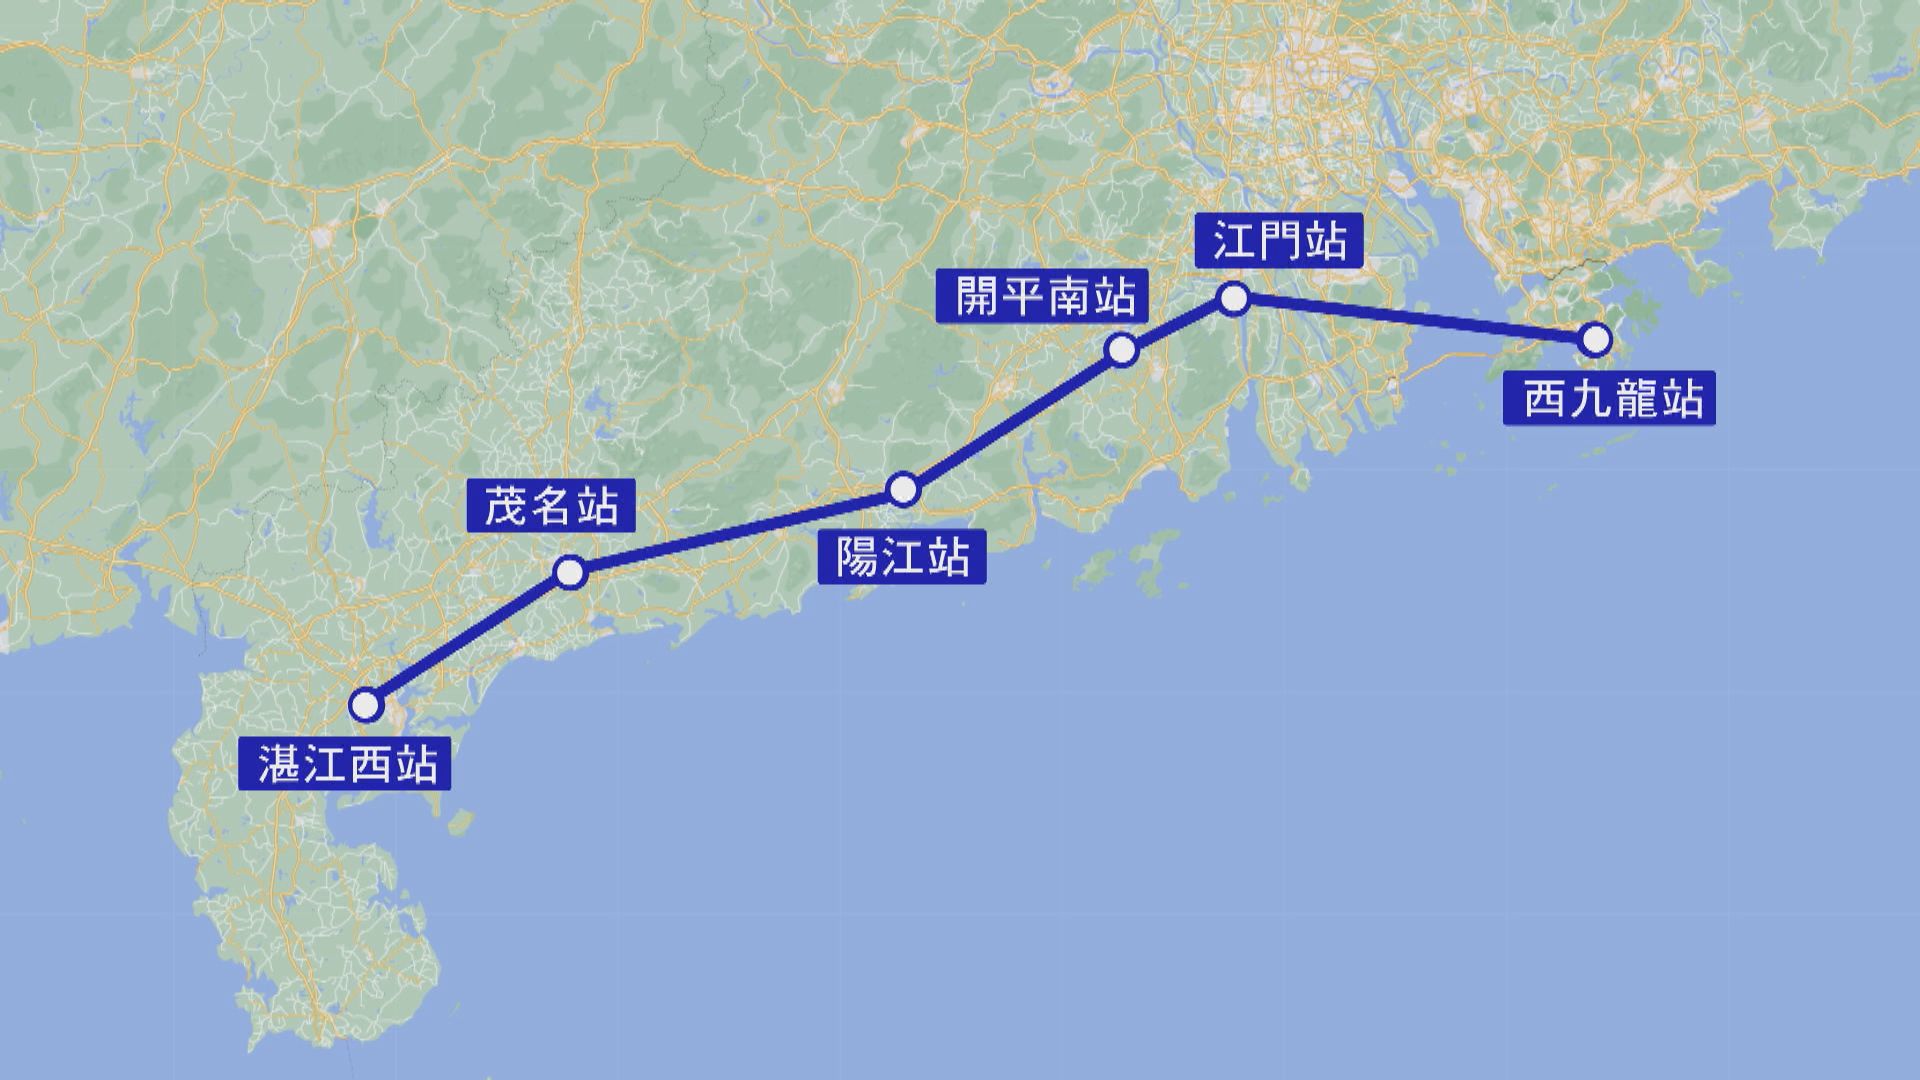 高鐵開通湛江西新綫增五個站點 西九站至江門兩小時就到